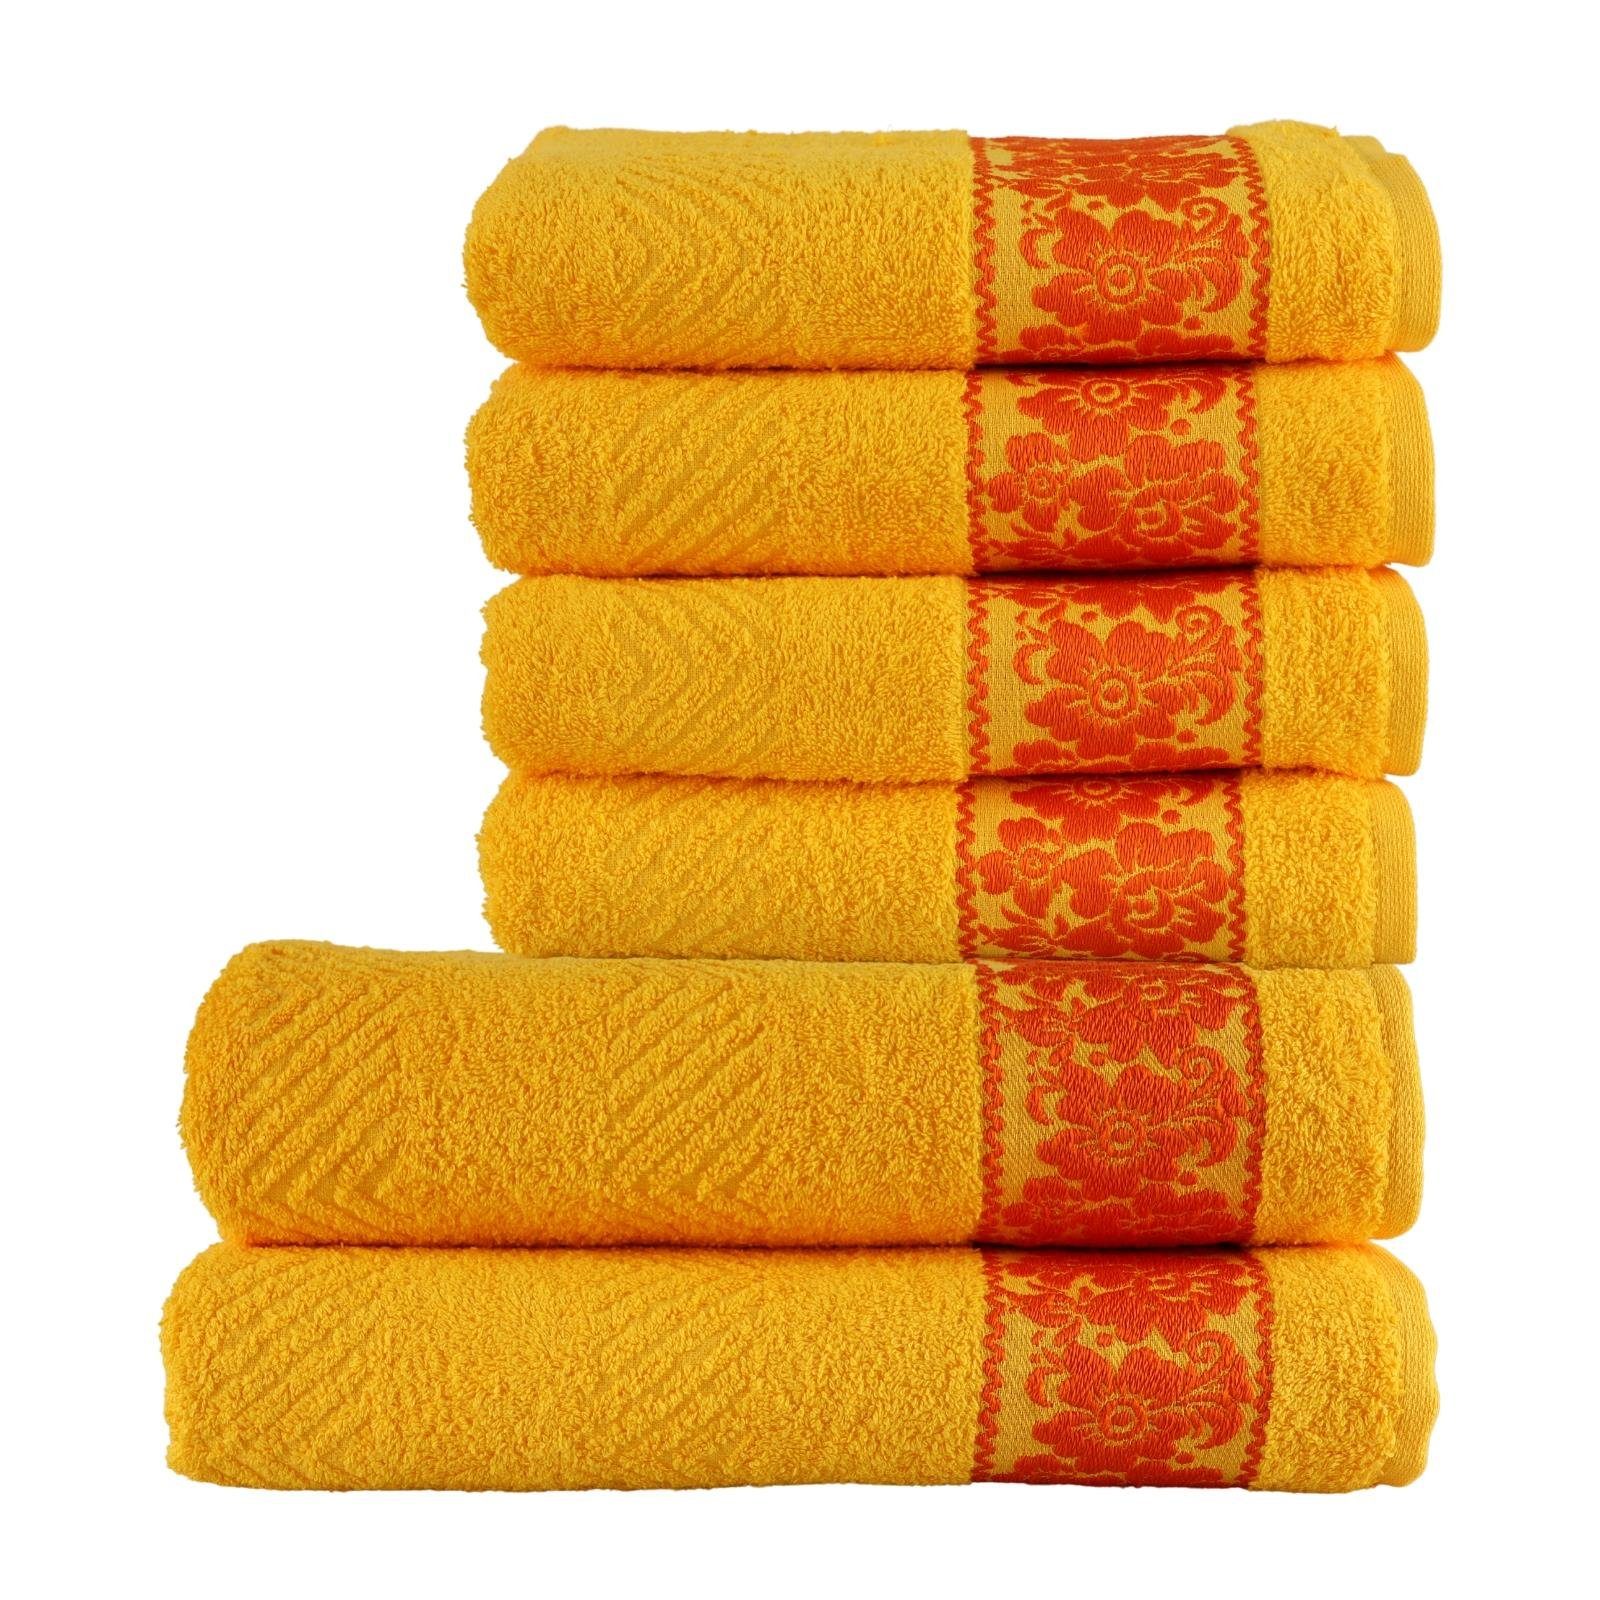 Plentyfy Handtücher Hand- &Duschtuch Set 6tlg aus 100% Baumwolle, 100% Baumwolle (6-St), Duschhandtuch - Frottee Handtuch Set - Badetuch